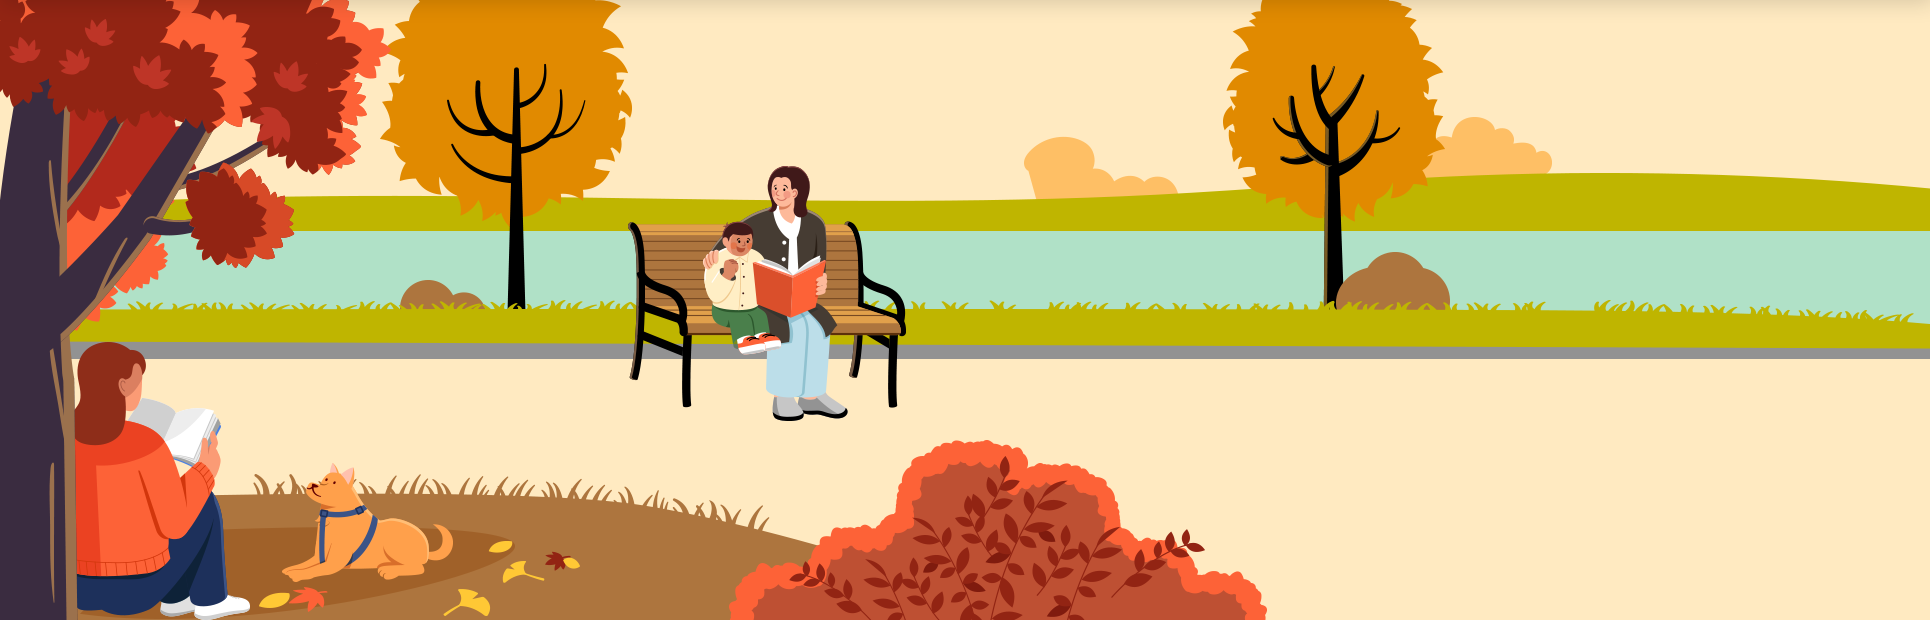 푸른 강 앞에 노란 잎이 무성한 나무 두 그루가 있고, 그 앞엔 의자가 놓여있다. 의자 위엔 책을 들고 있는 어머니와 아이가 나란히 앉아있는 그림이 있다. 앞쪽엔 빨간 잎의 나무 두 그루가 그려져 있는데, 왼쪽 나무엔 한 여성이 나무에 등을 기대고 책을 읽고, 그 앞에 강아지가 그 여성을 보고 있는 그림이 그려져 있다.